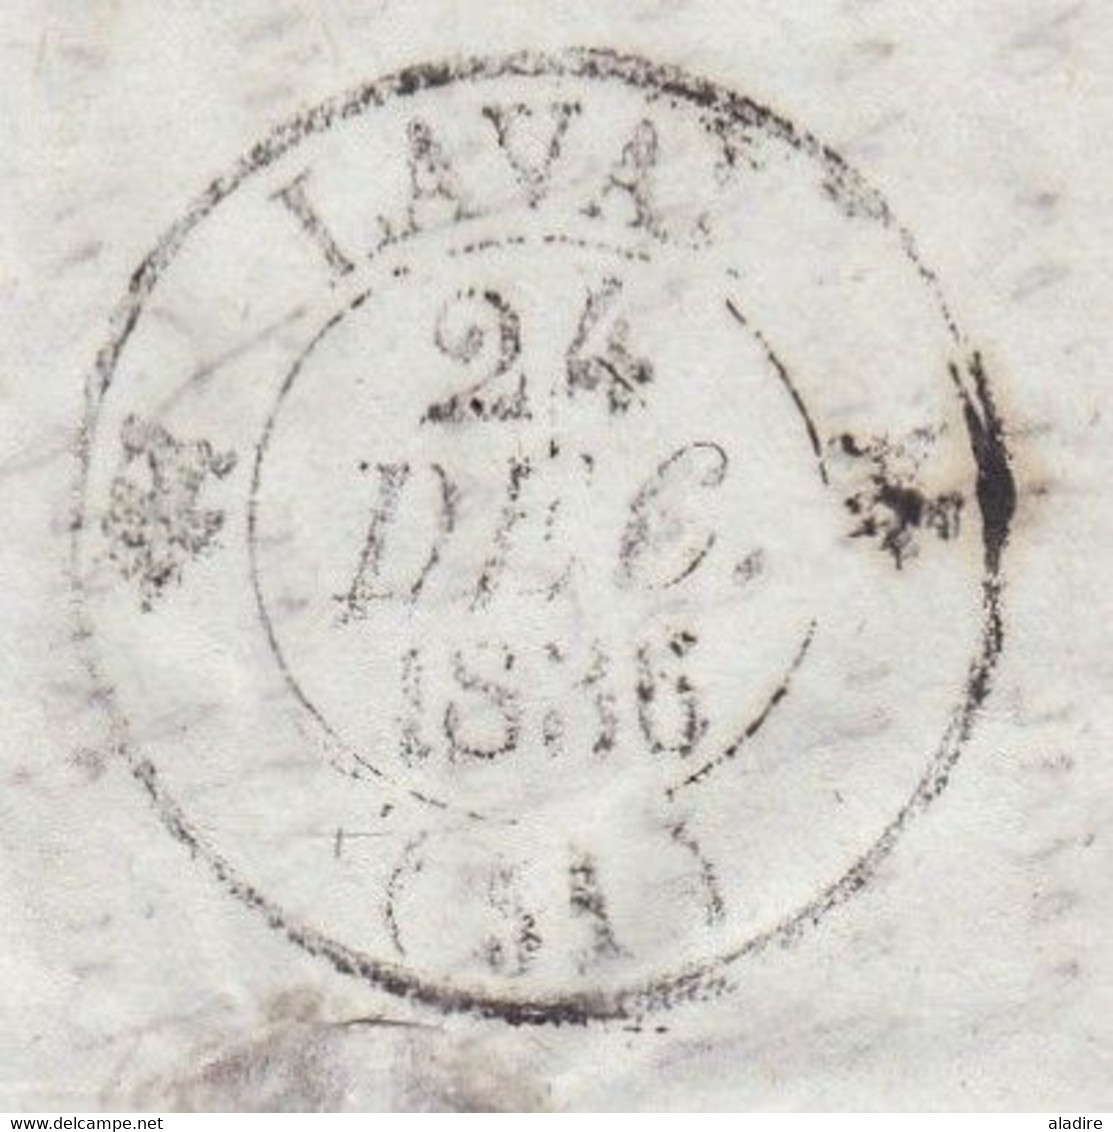 1836 - Cursive 51 VAIGES, Mayenne sur lettre pliée avec corresp fraternelle vers Laval - décime rural - facteur boitier